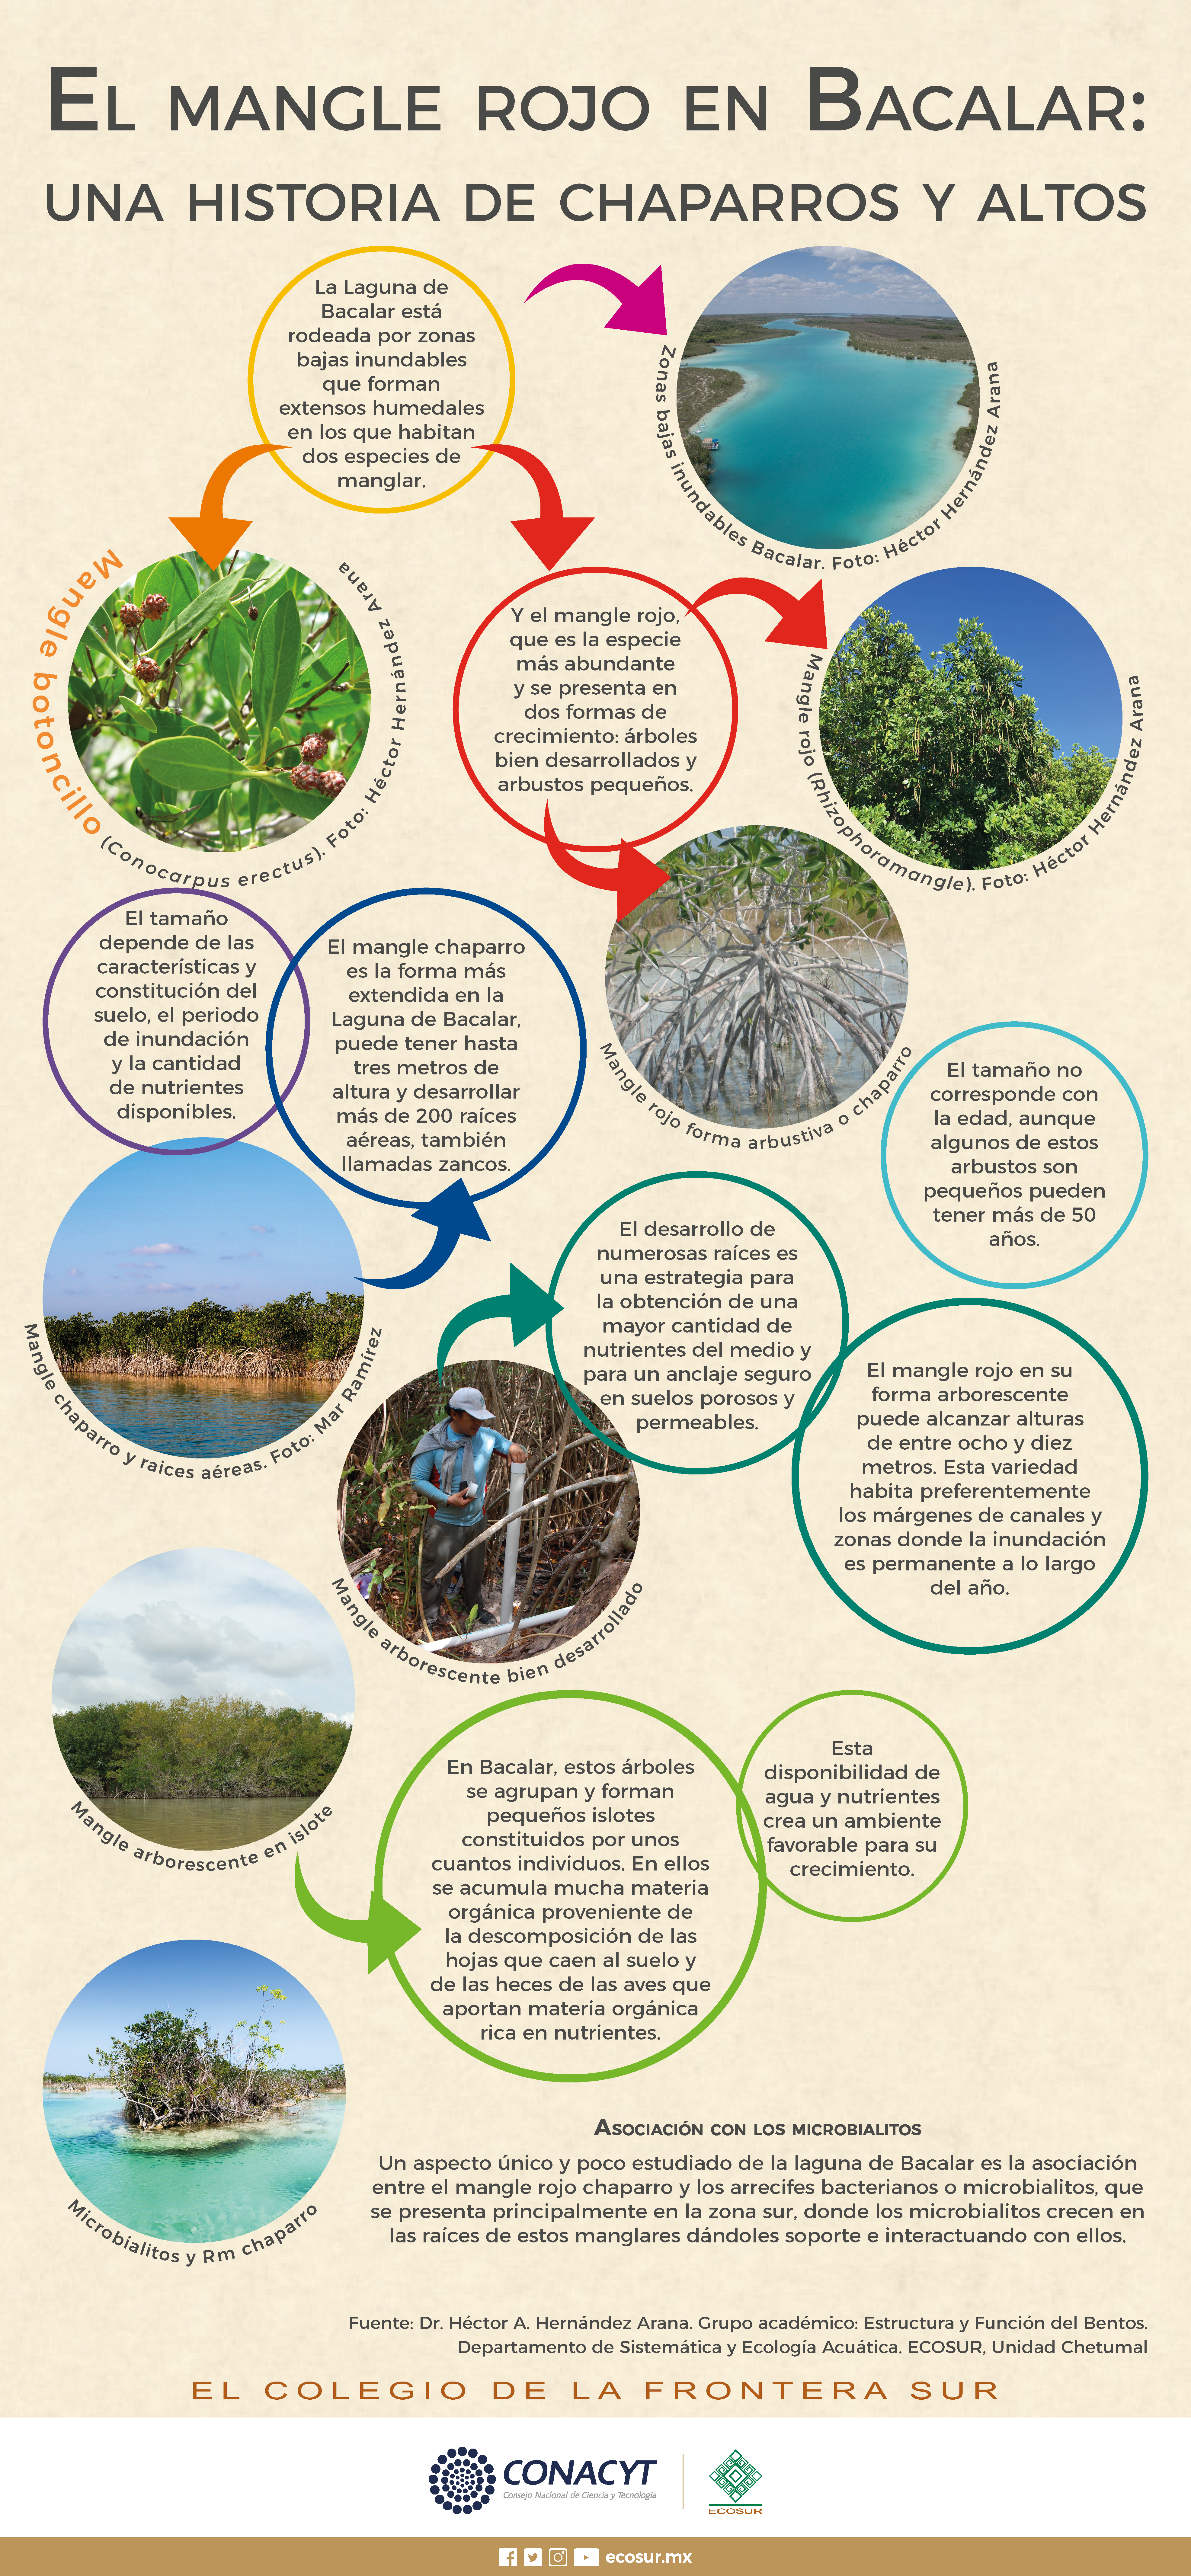 El mangle rojo en Bacalar: Una historia de chaparros y altos